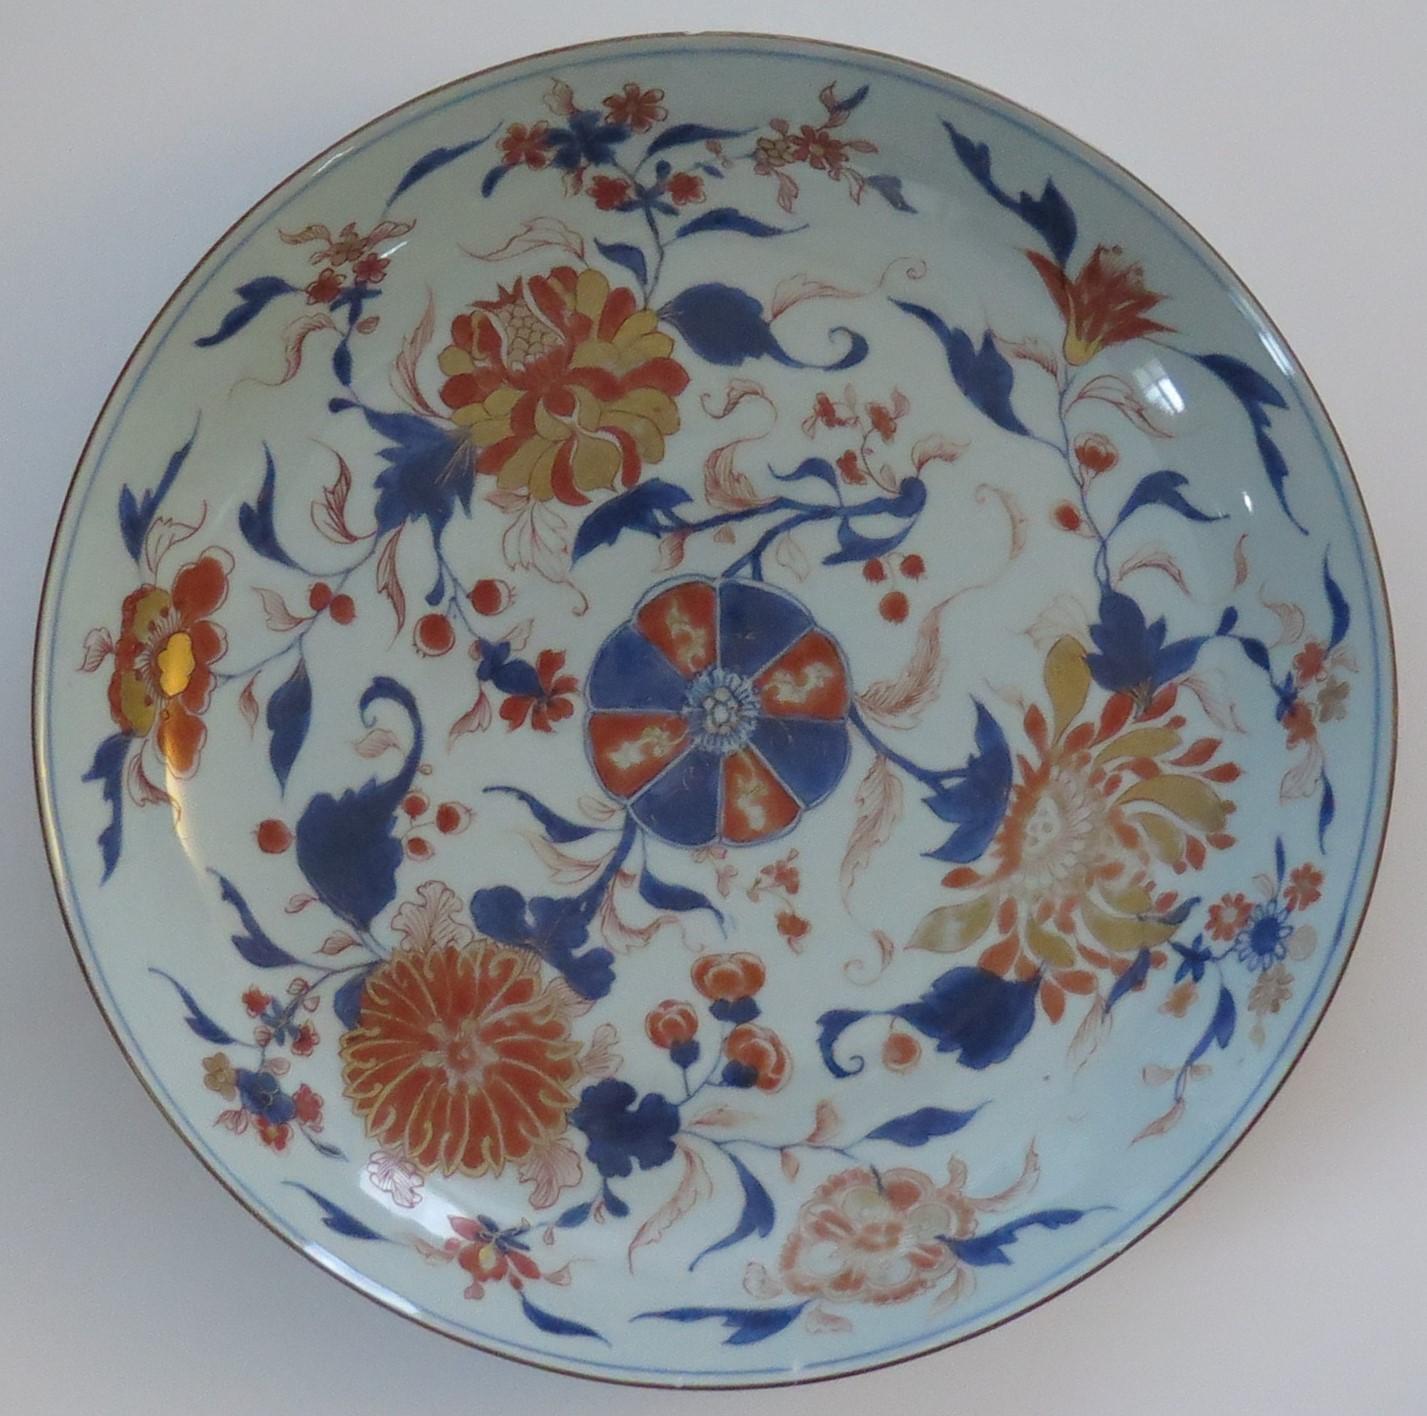 Il s'agit d'un très grand plat ou assiette en porcelaine chinoise Imari, peint à la main, de la période Qing, Kangxi, 1662-1722, datant d'environ 1710.

Les assiettes ou les chargeurs de la période Kangxi ont un très grand diamètre (14,7 pouces ou